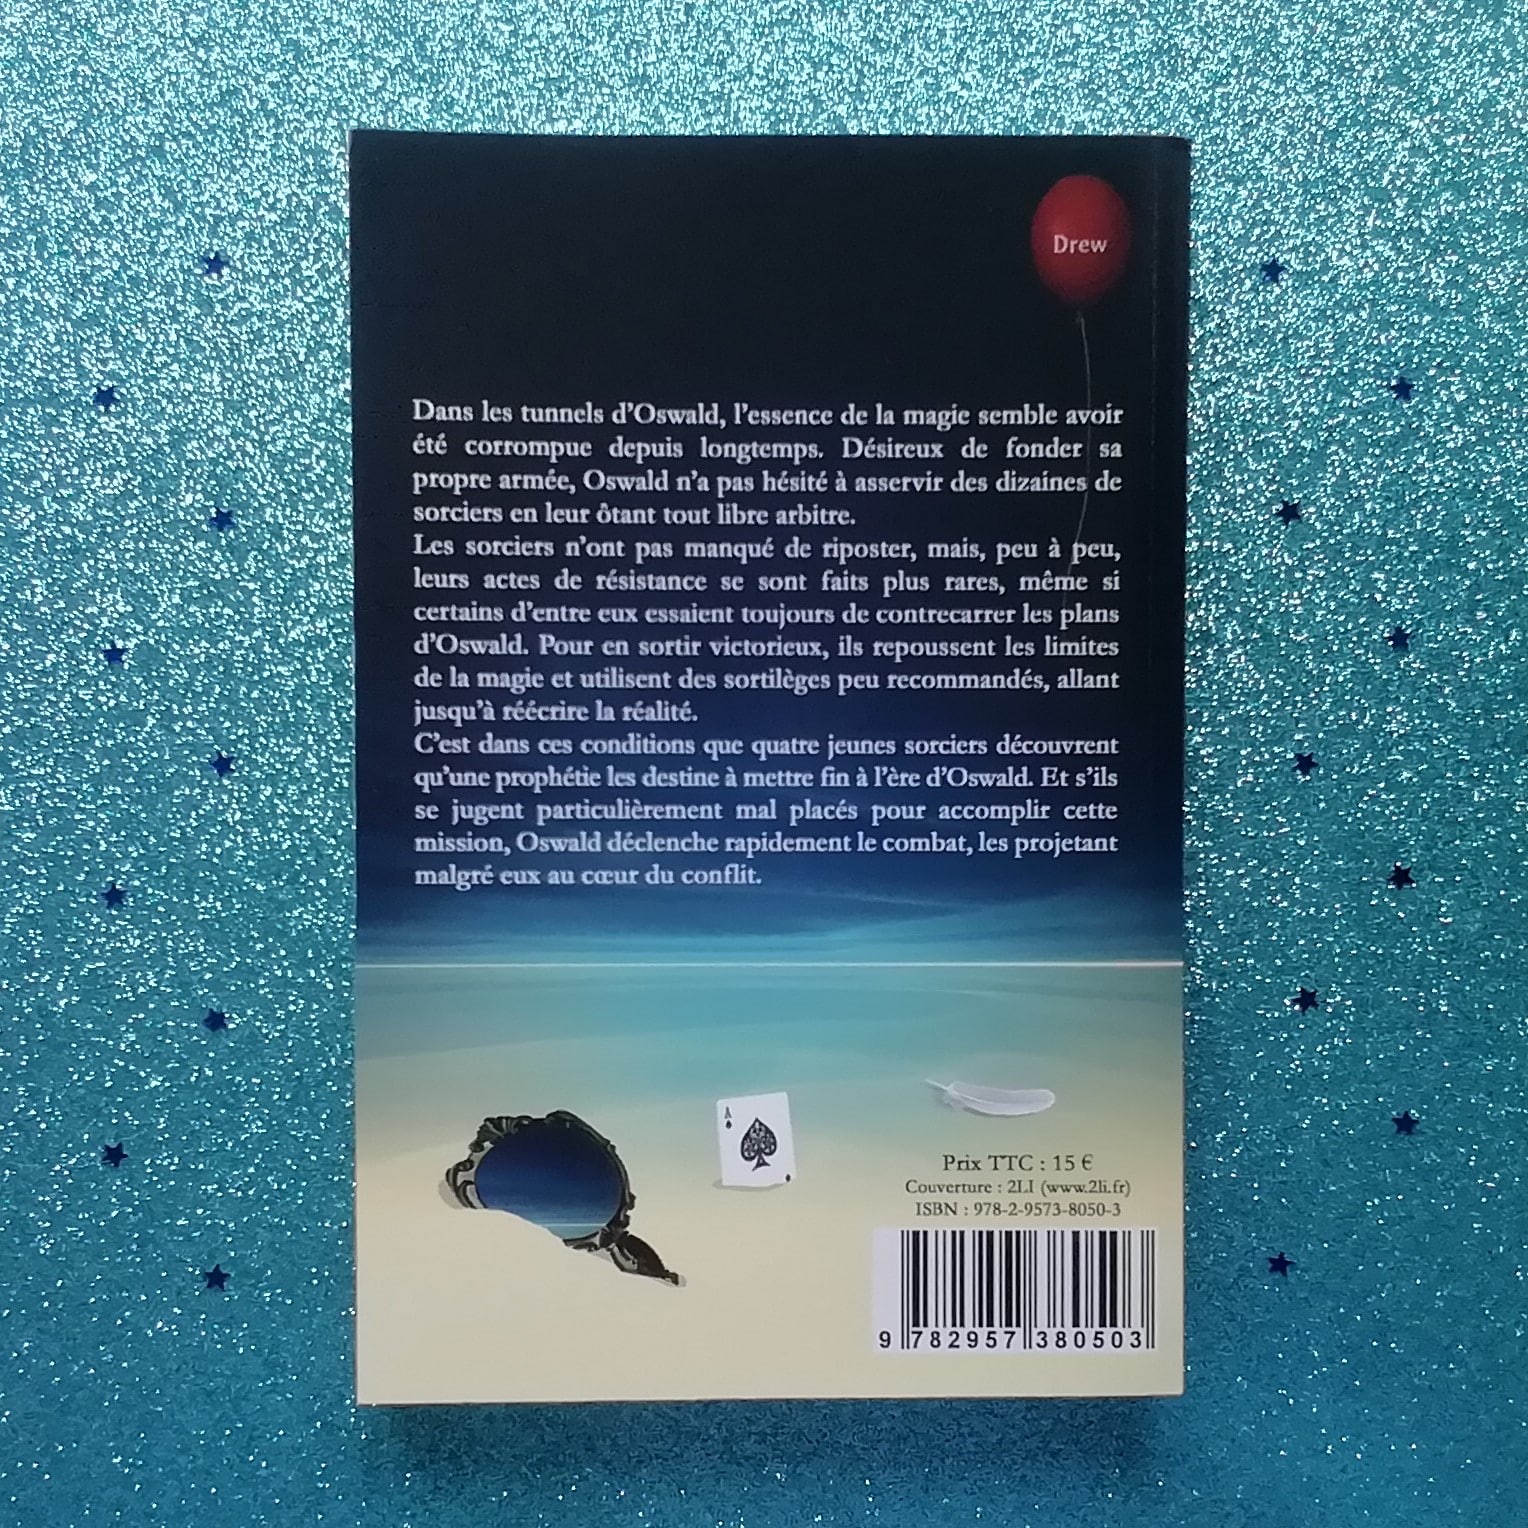 Sur cette image, on voit la 4e de couverture du roman "Le Sortilège de Linda - Tome 1". On peut y voir un miroir, une carte as de pique et une plume qui se trouvent sur une plage.